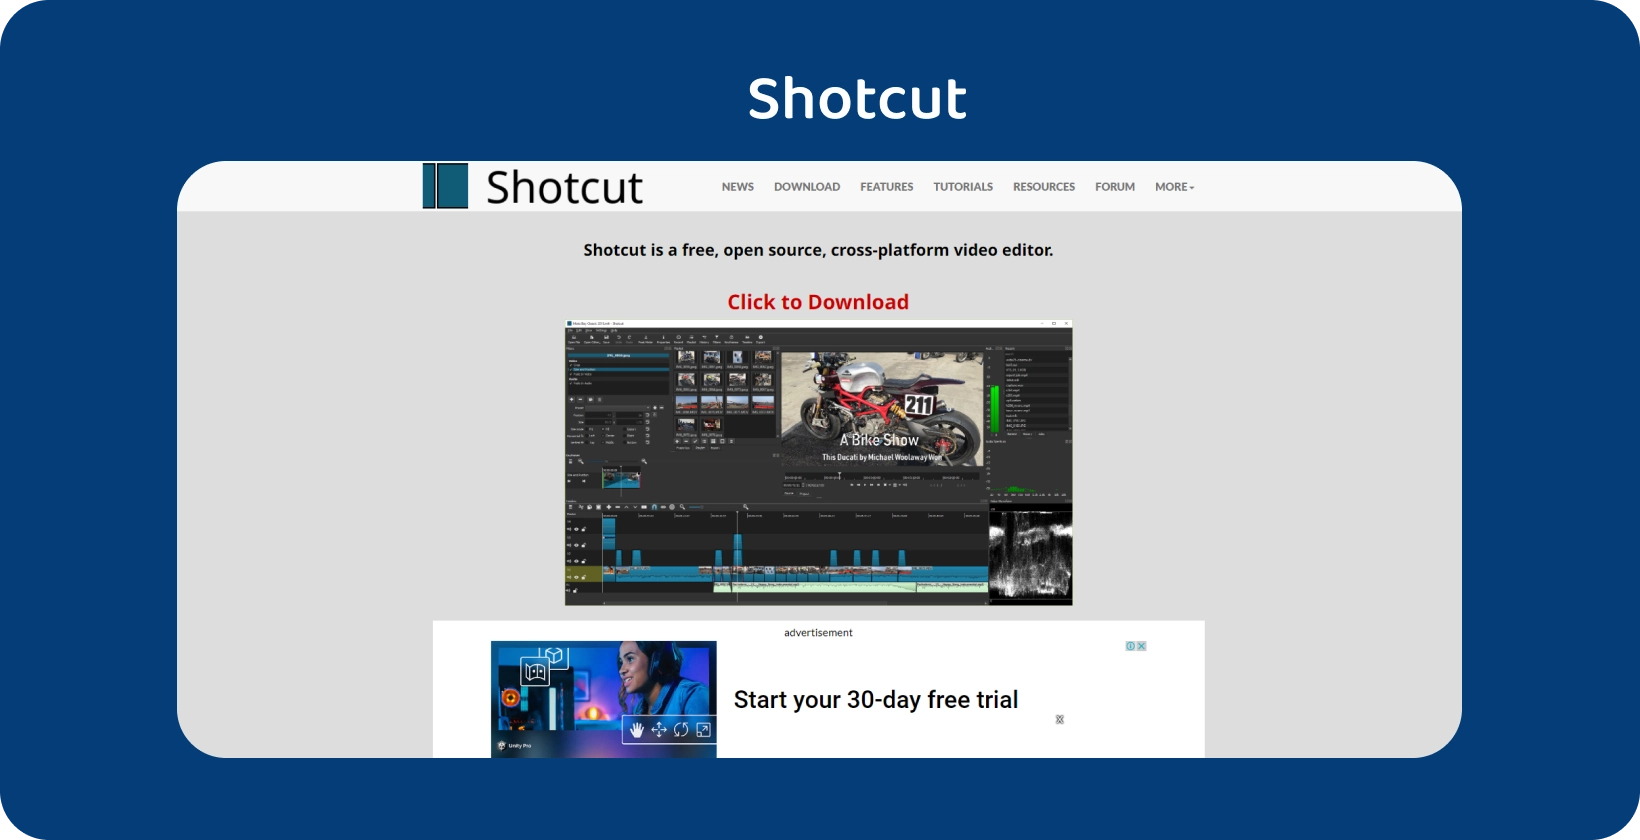 Shotcut संपादक इंटरफ़ेस: मजबूत संपादन टूल के साथ एक विस्तृत मोटरसाइकिल वीडियो टाइमलाइन स्पष्ट रूप से प्रदर्शित होती है।